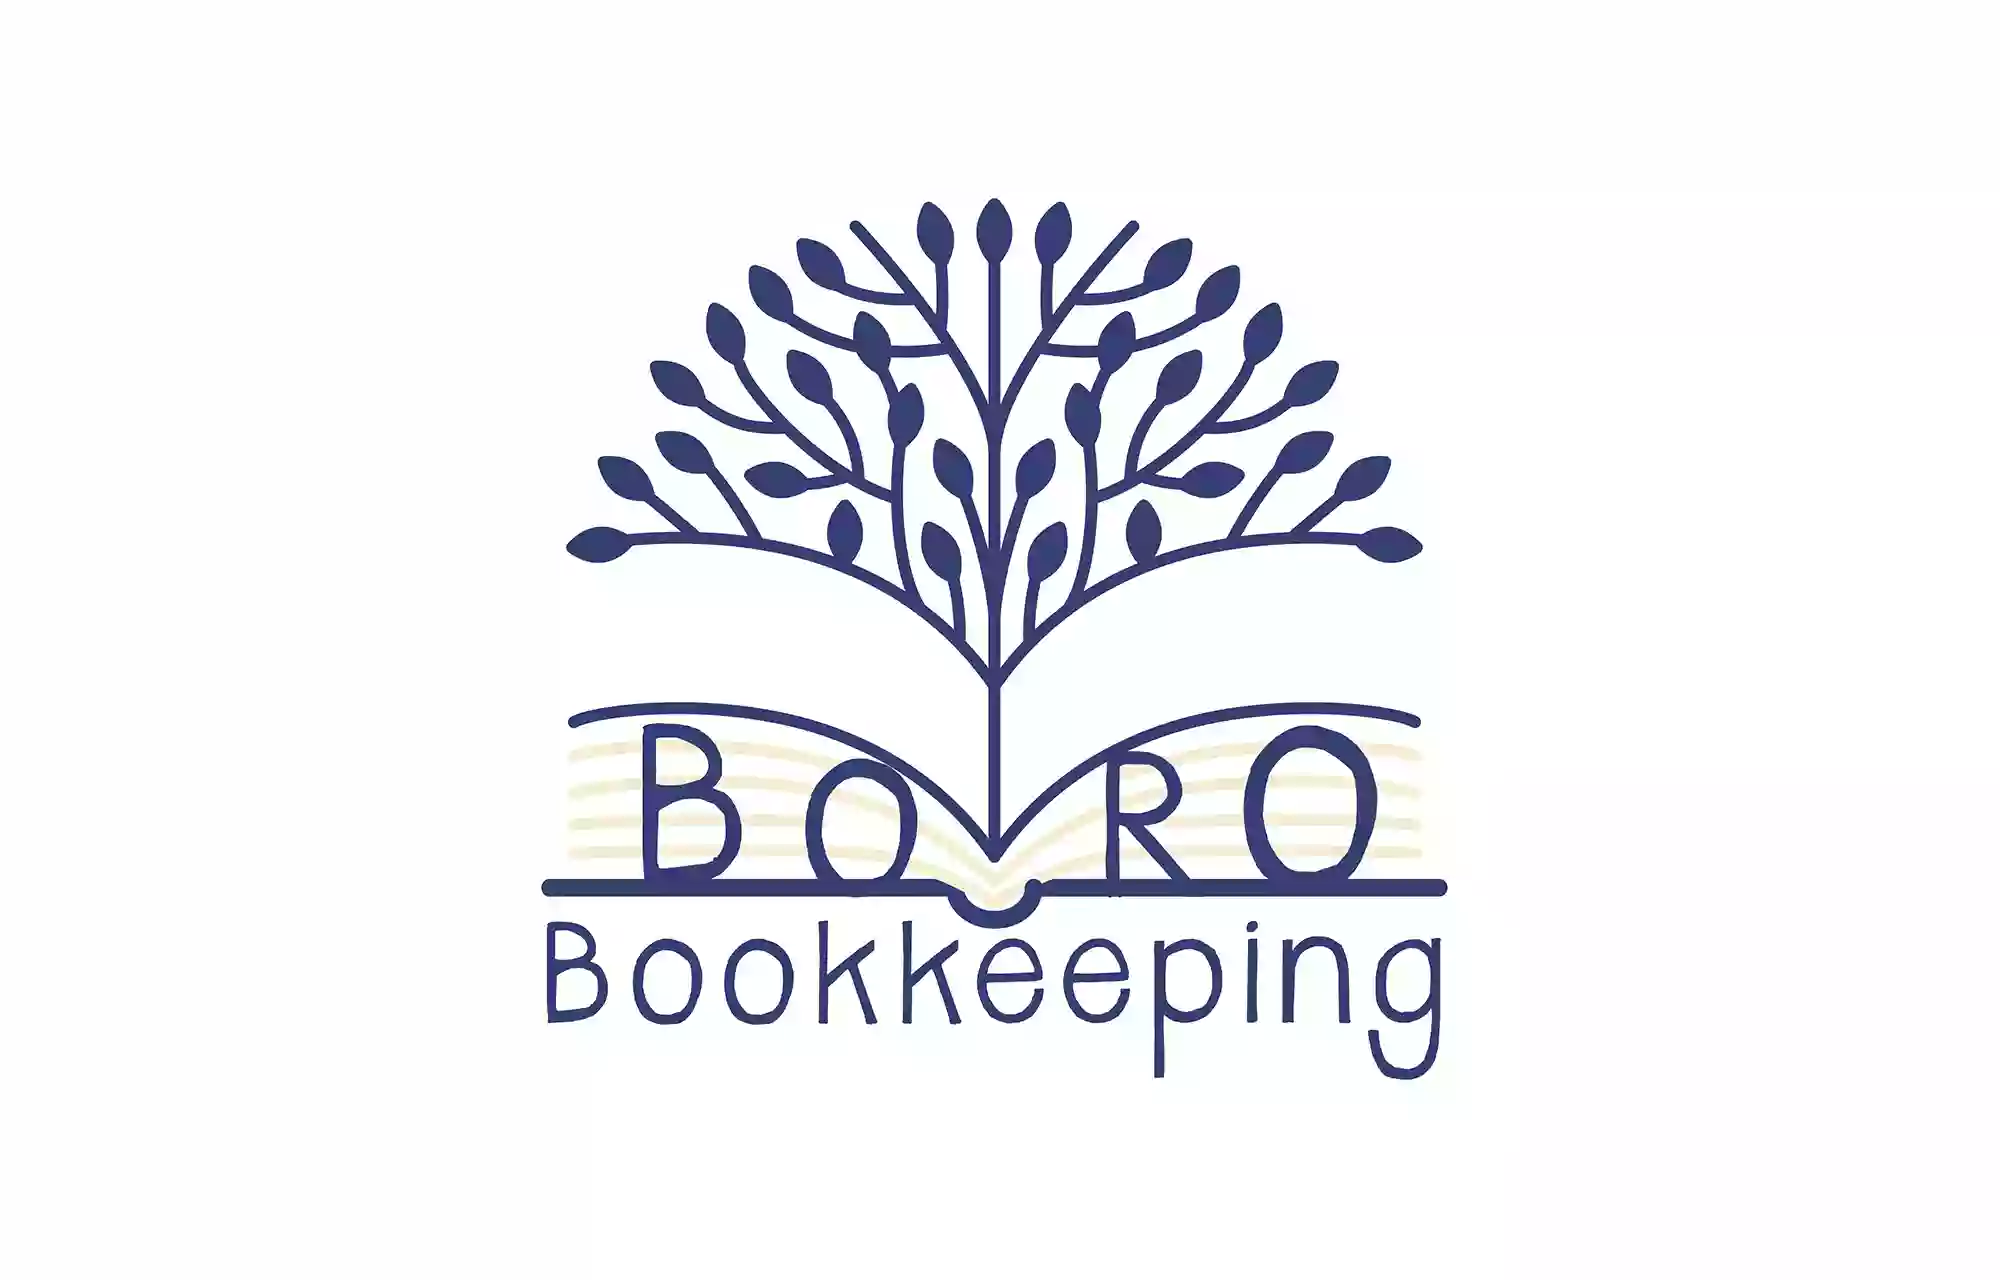 Boro Bookkeeping